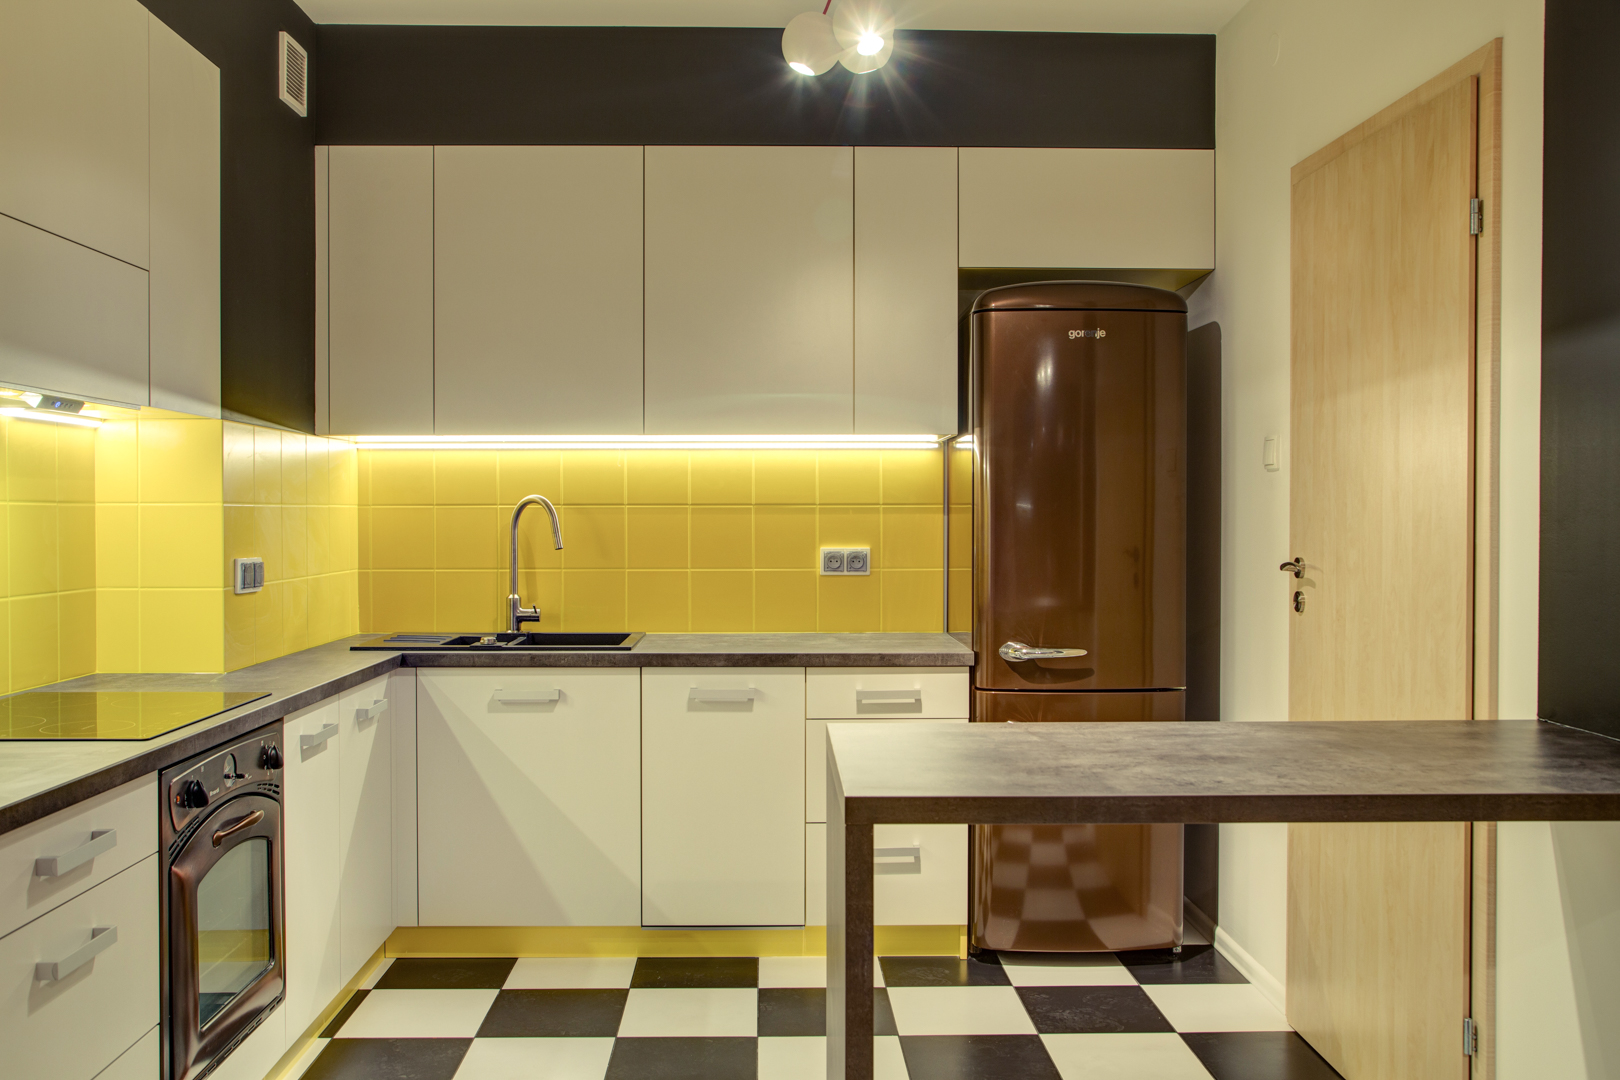 Watt Writer constantly Urządzanie wnętrza kuchni: Lodówka - Perfect Space